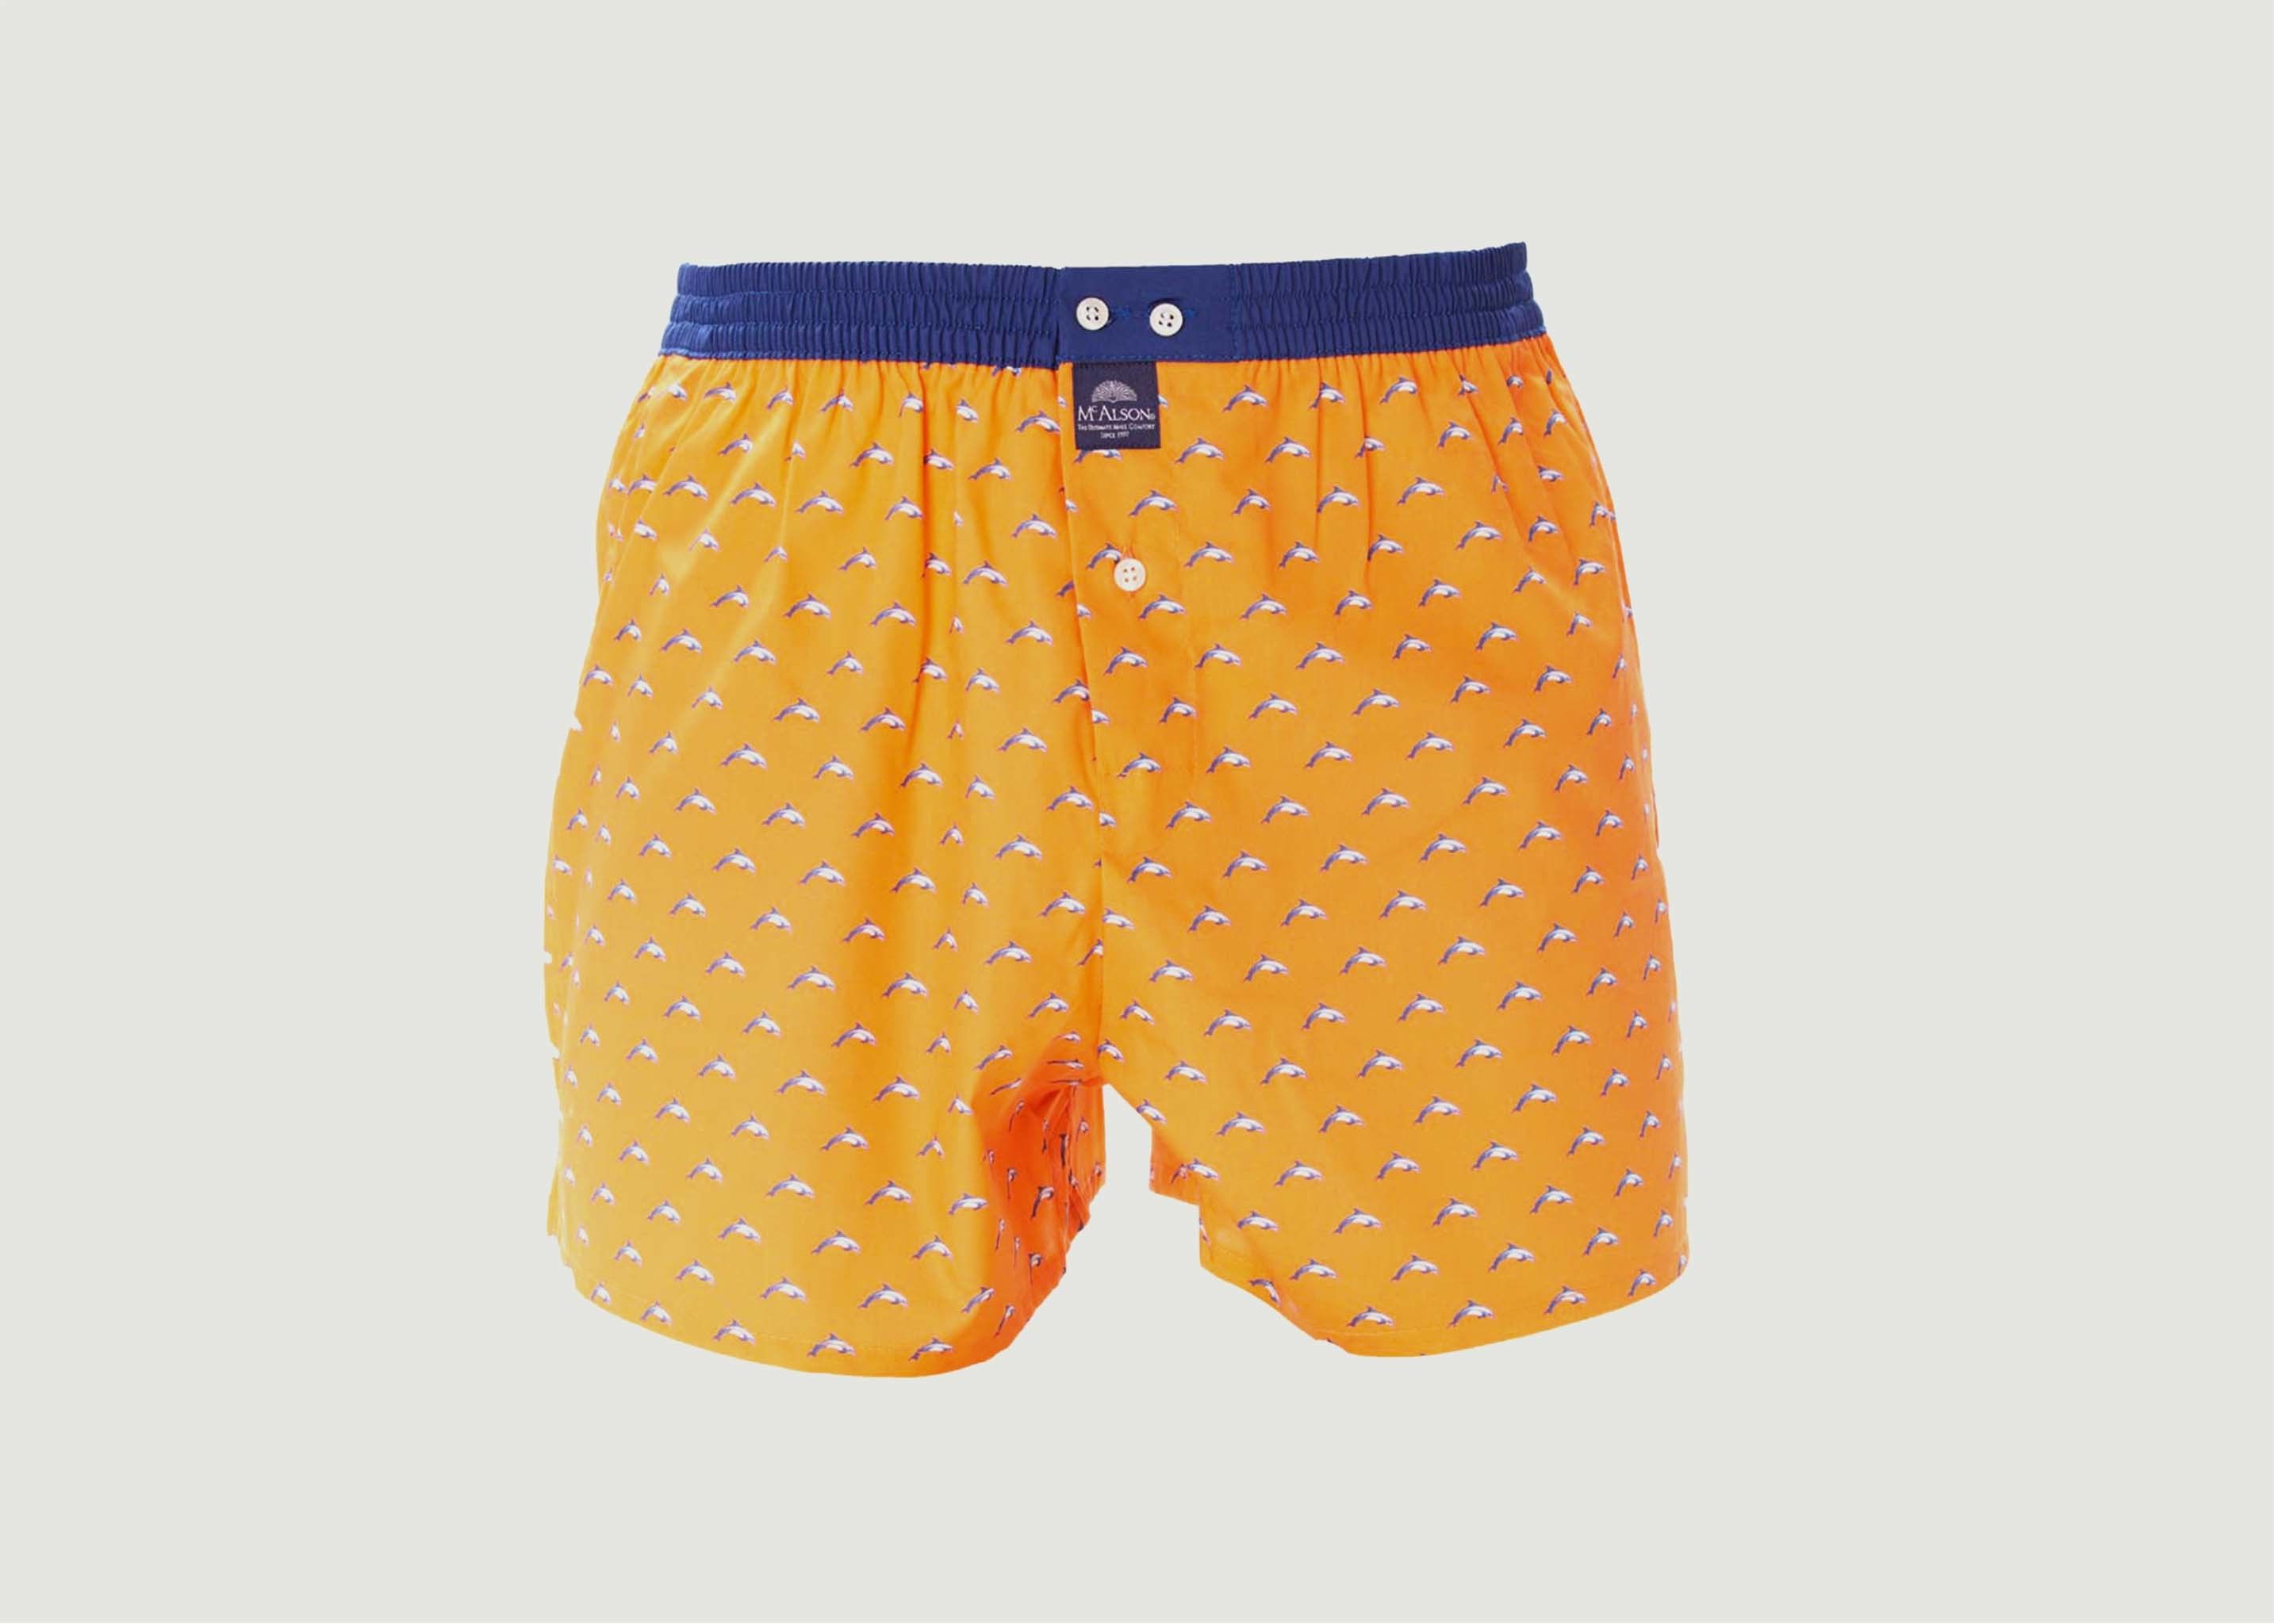 Dolphins cotton boxer shorts - Mc Alson